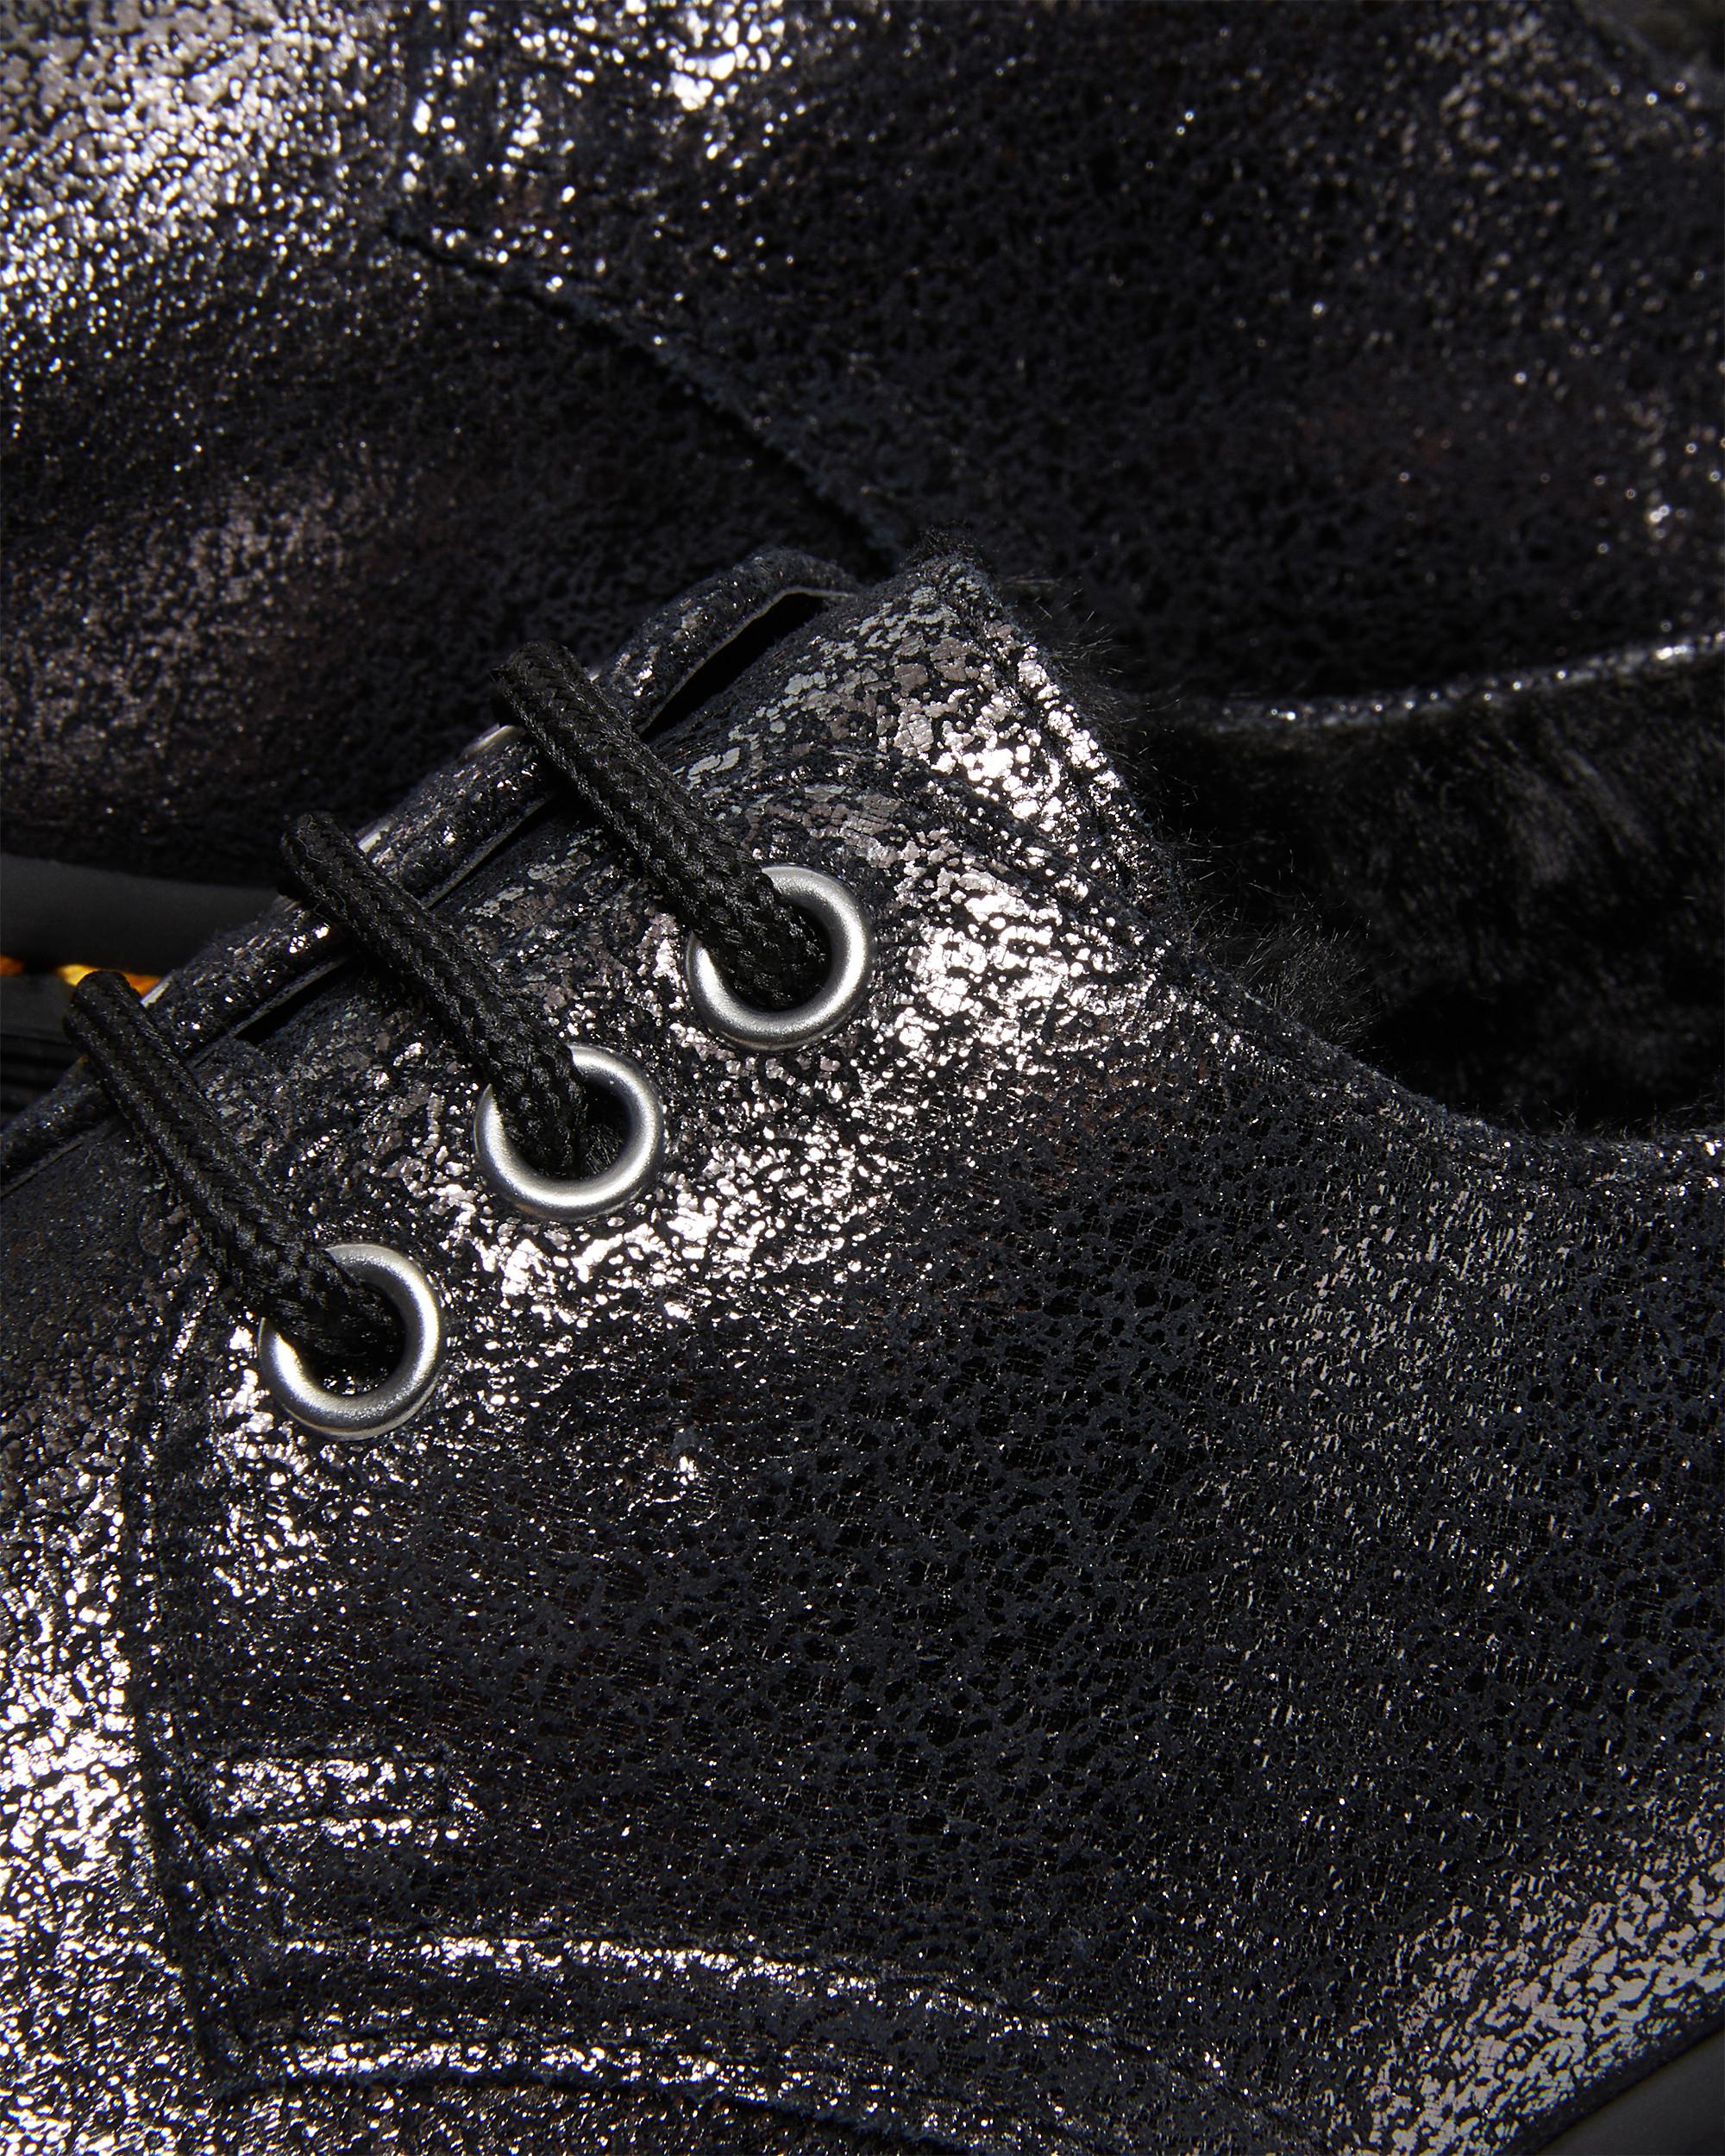 Zapatos con plataforma 1461 metalizados con forro sintéticoZapatos Con Plataforma 1461 Metalizados Con Forro Sintético Dr. Martens